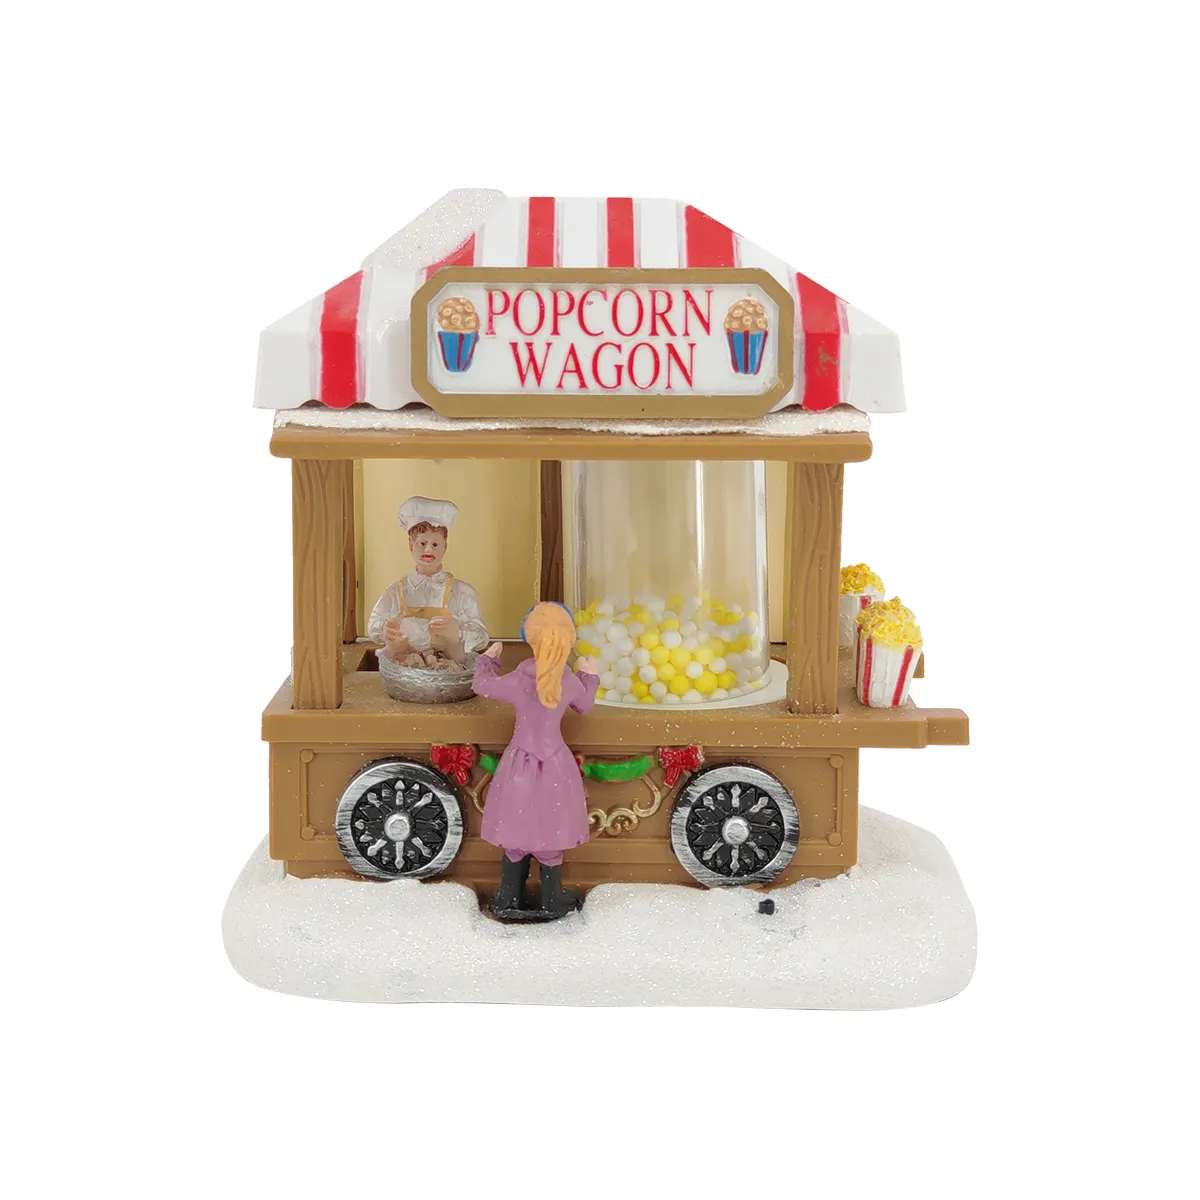 Resina scena natalizia snow house led popcorn wagon village holiday home ornamenti per la decorazione del desktop